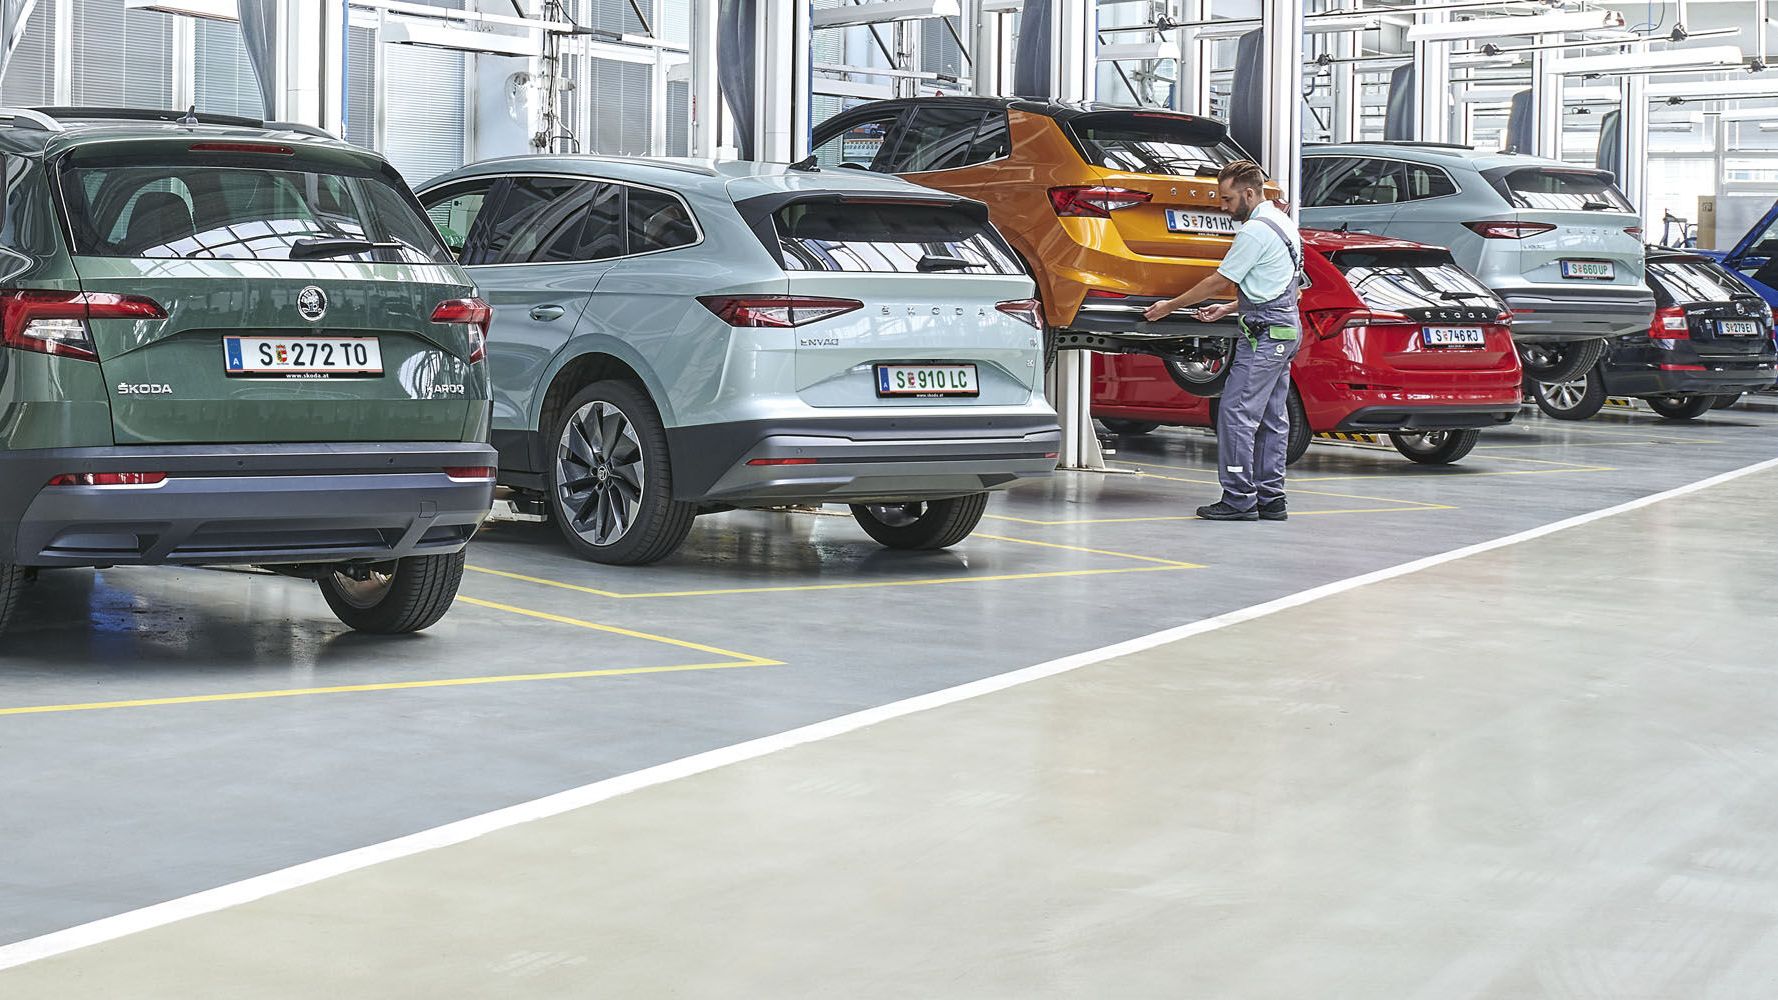 Verschiedene Škoda Modelle in einer Werkstatt